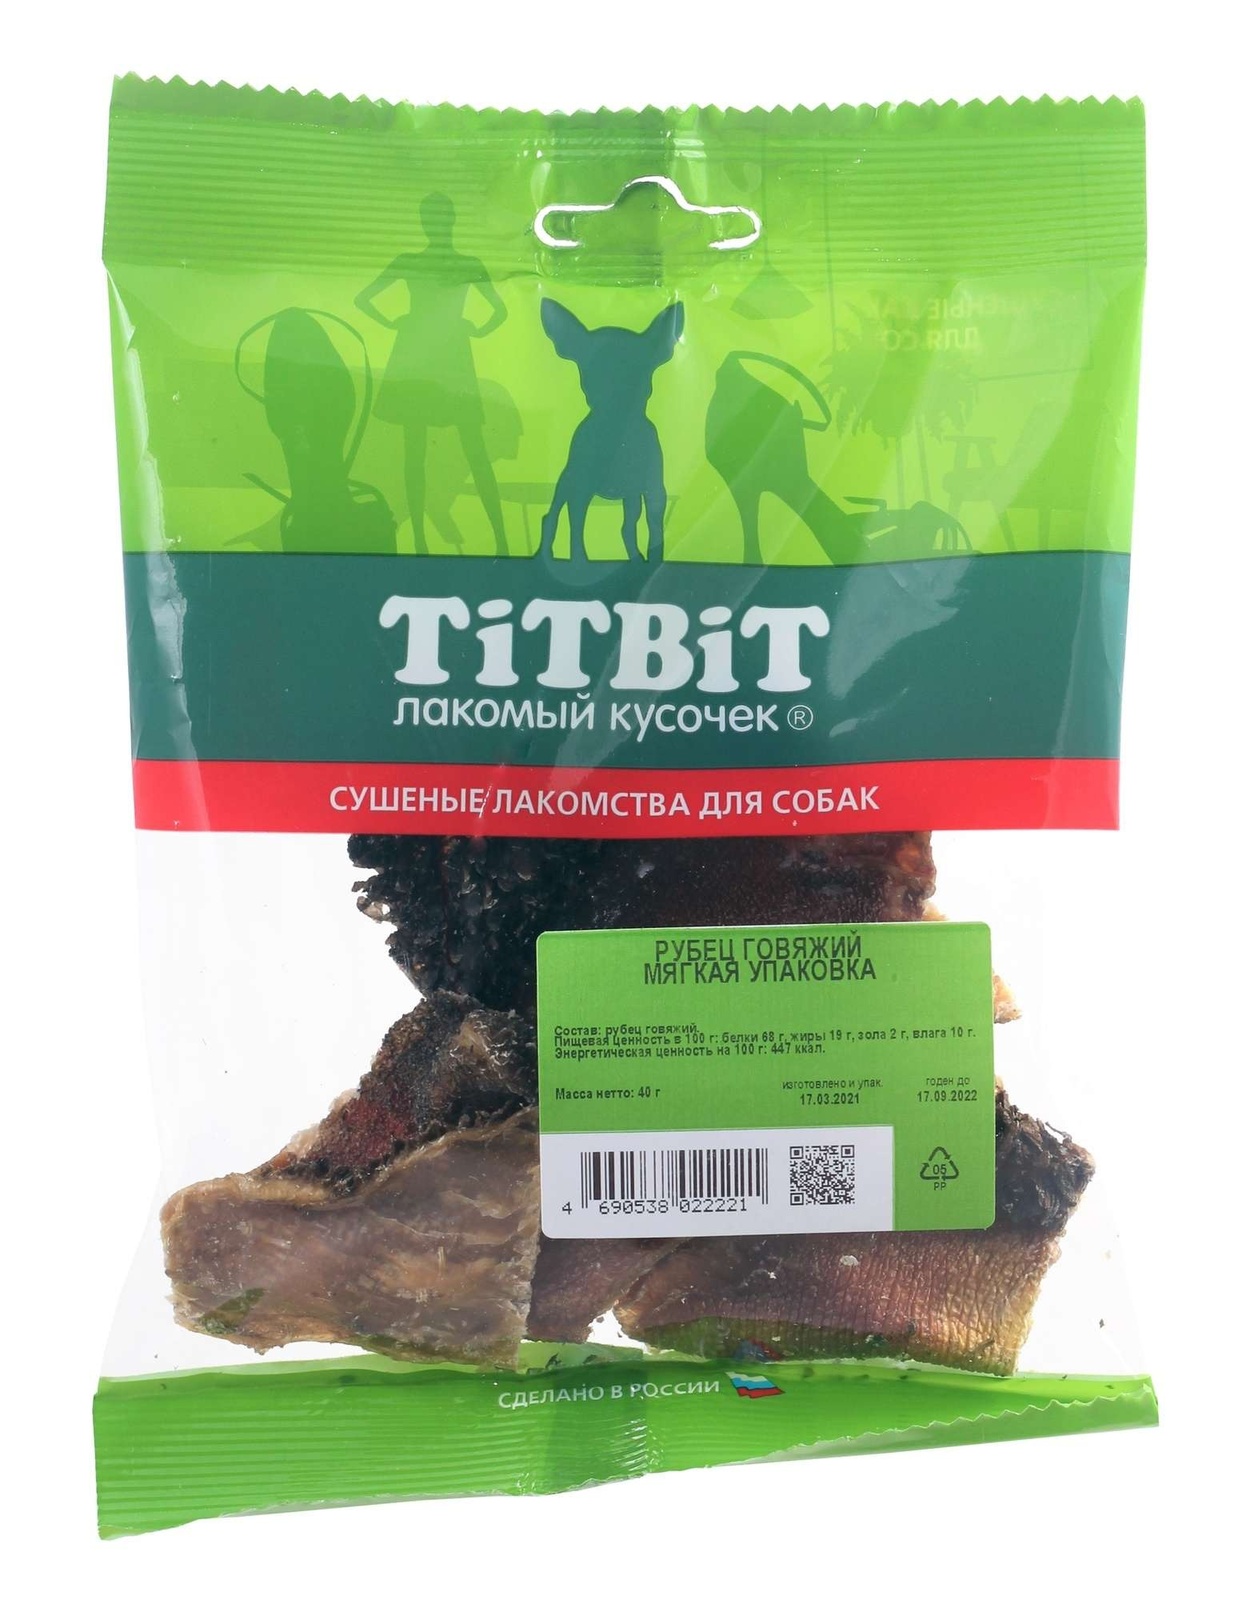 TiTBiT TiTBiT рубец говяжий - мягкая упаковка (40 г) titbit titbit рубец говяжий мягкая упаковка 40 г